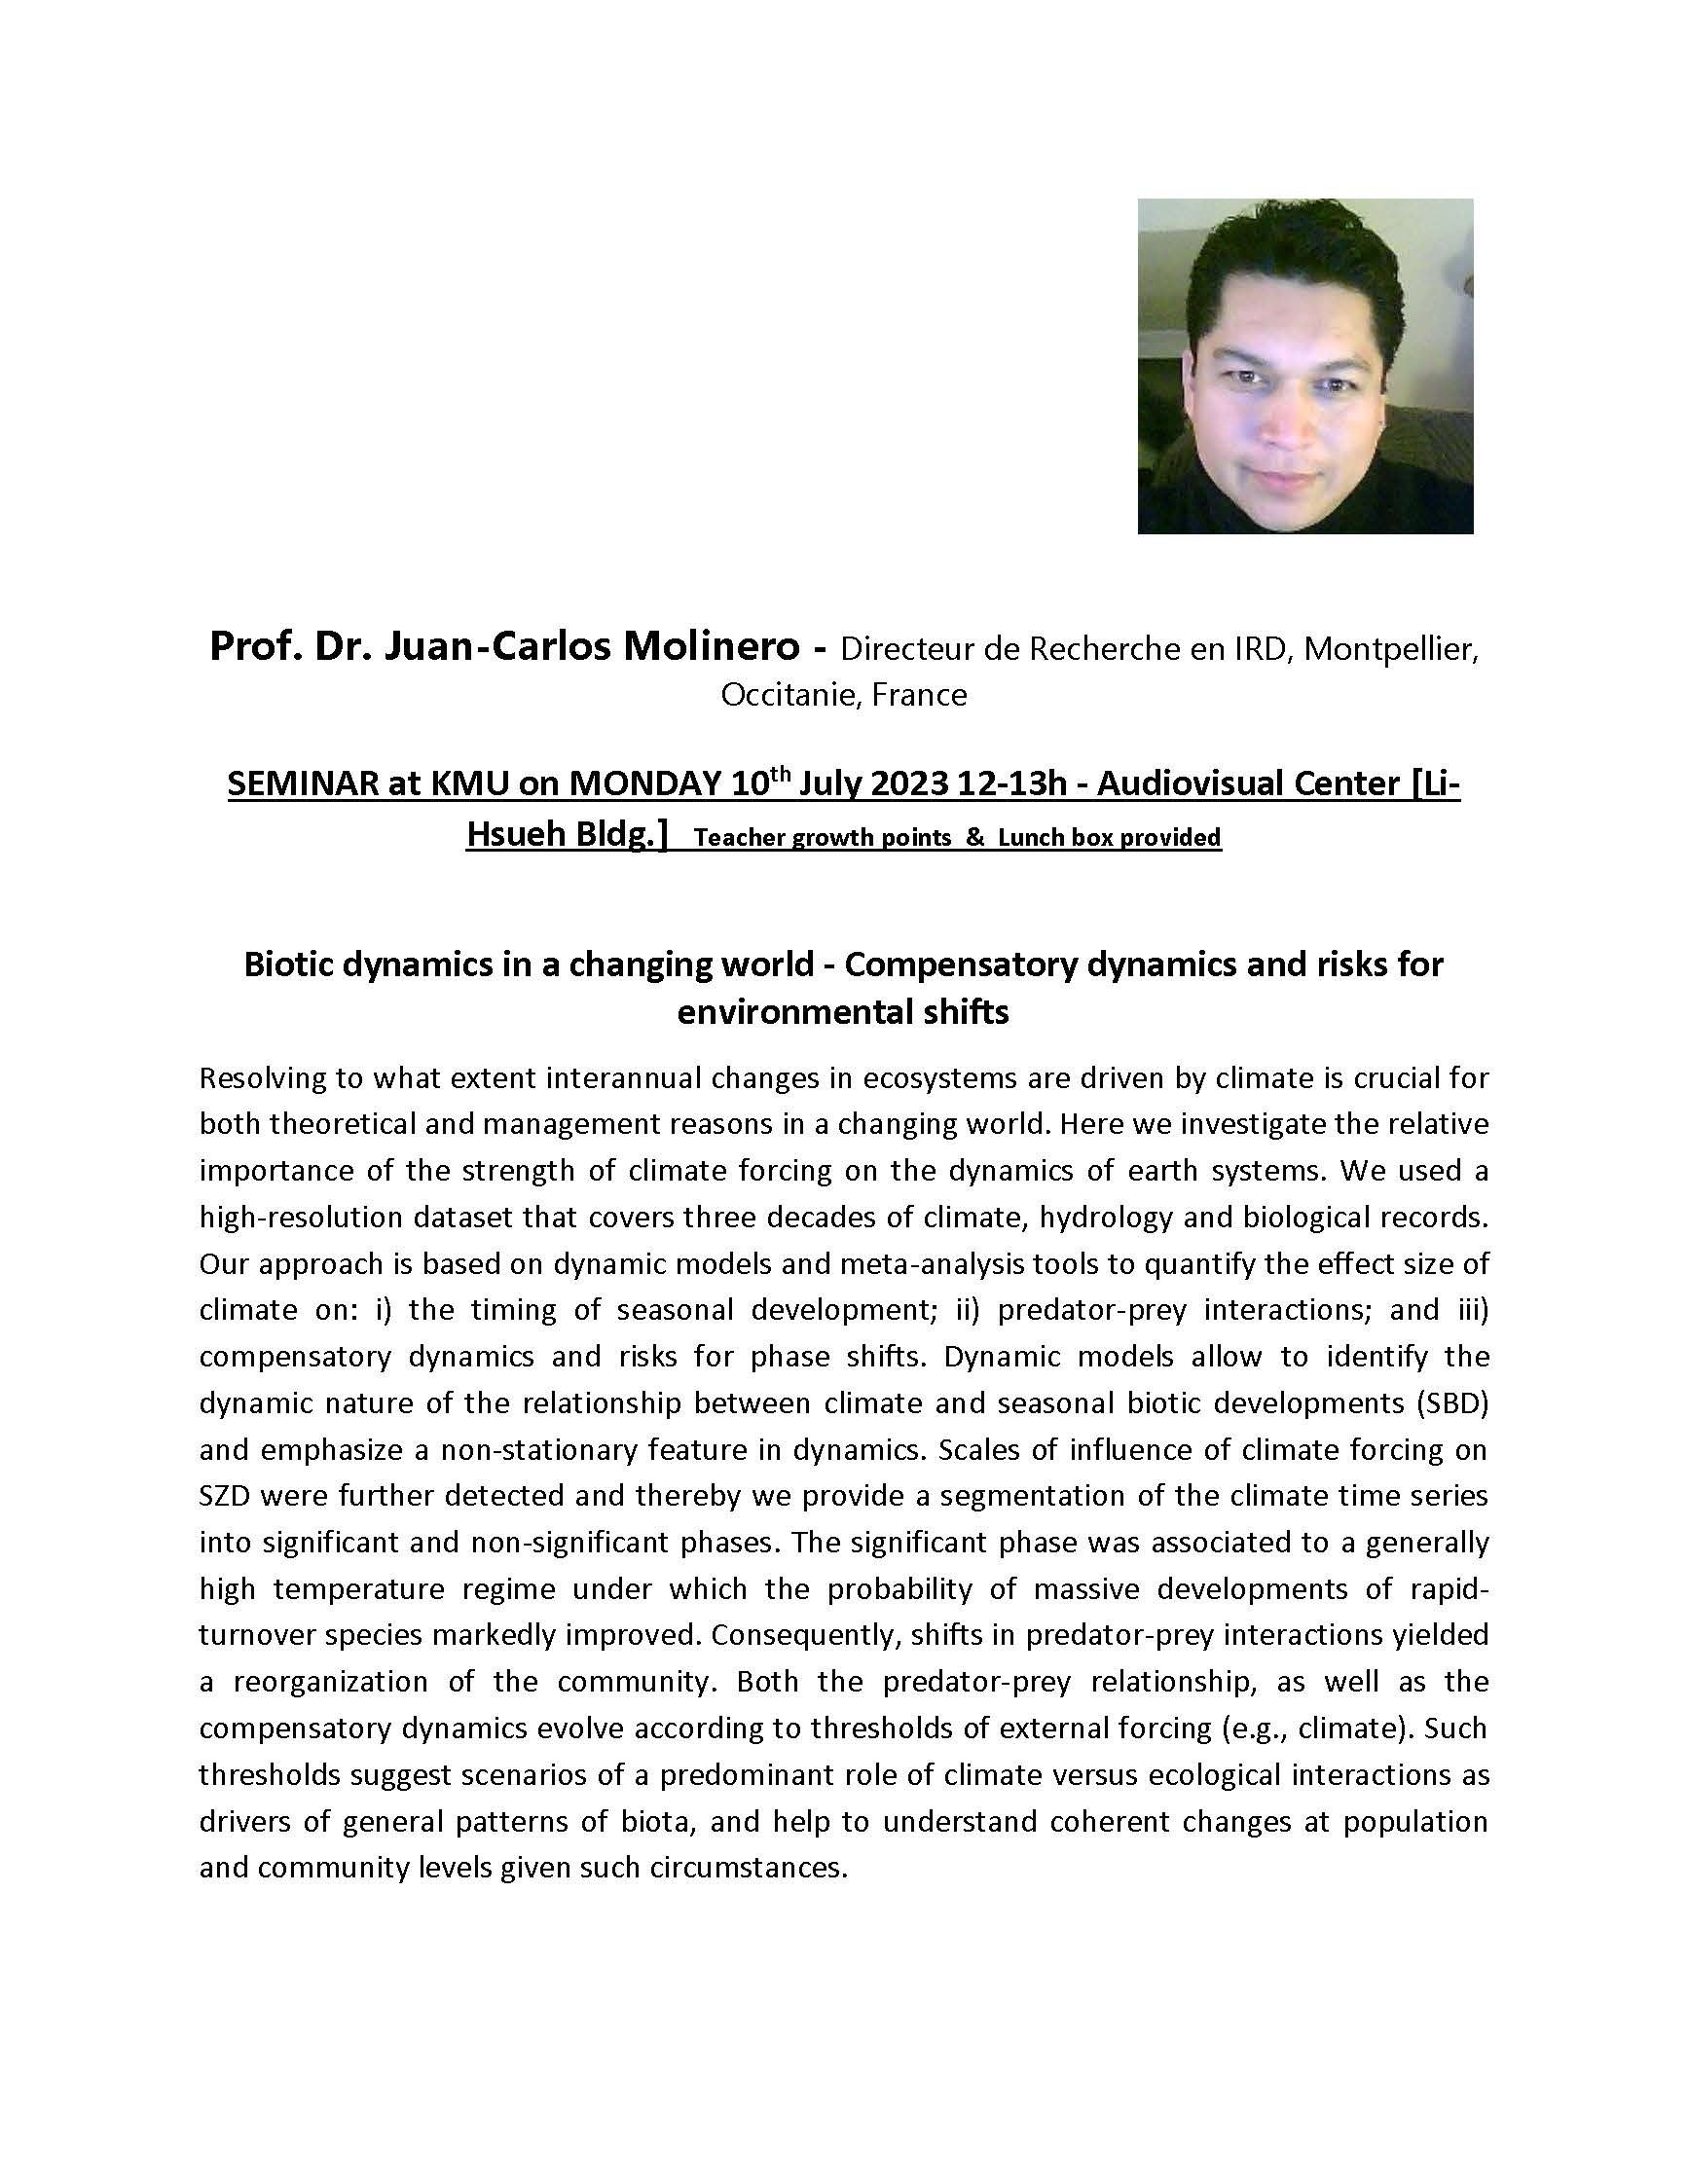 Prof. Juan Carlos Molinero 0710